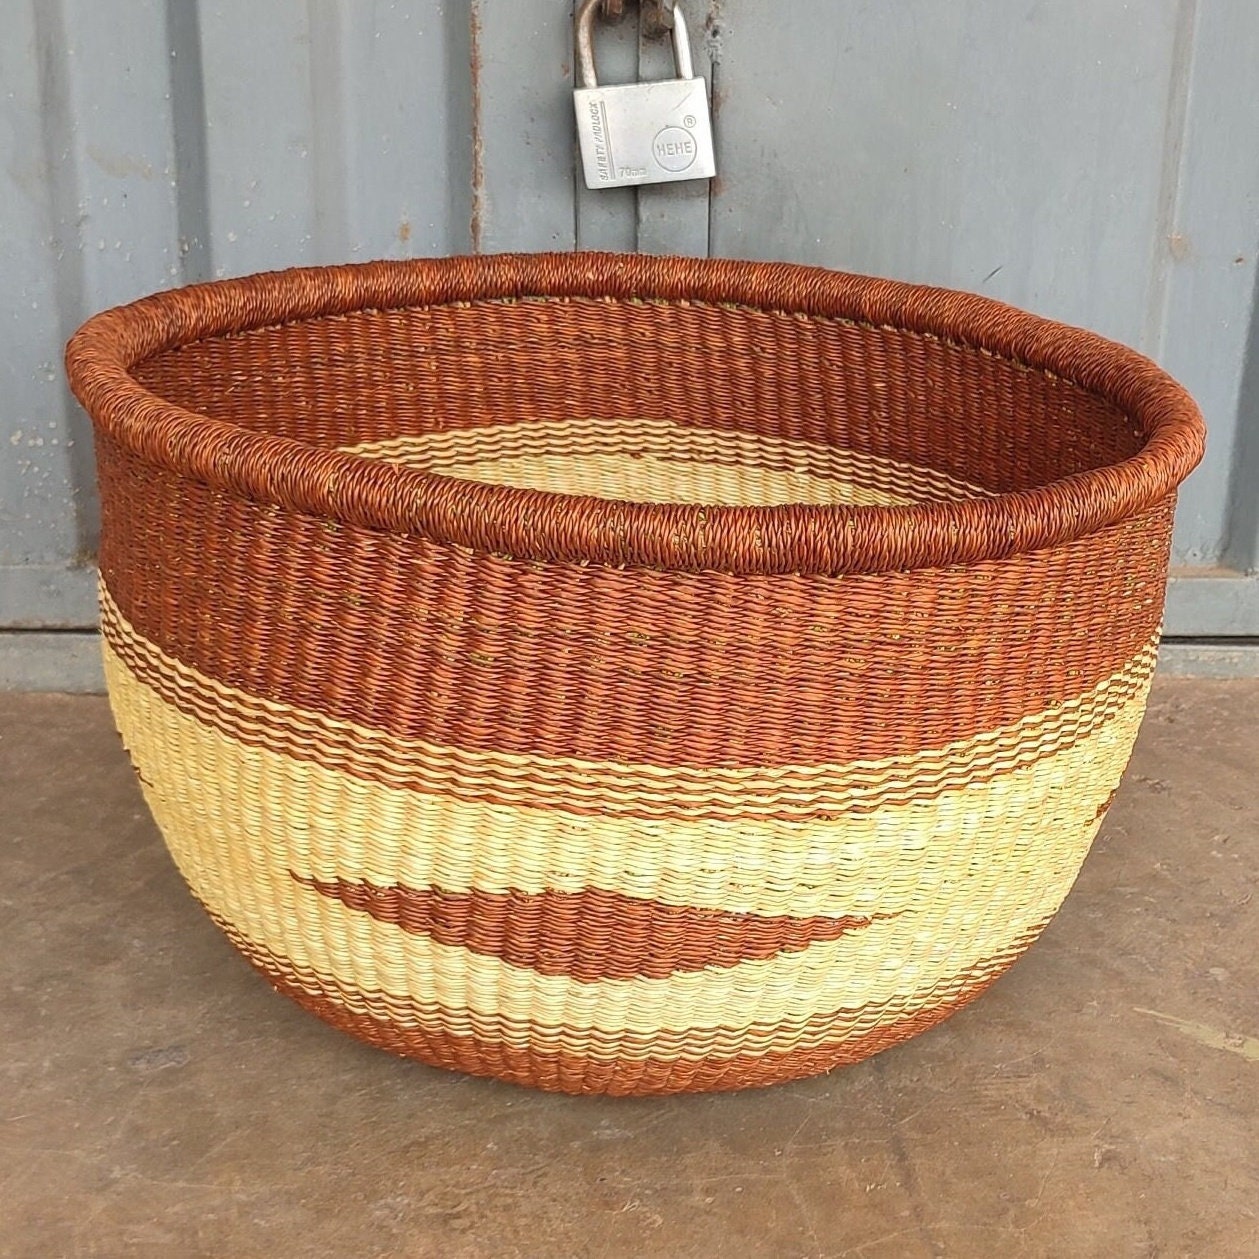 Bolga Basket, African Basket, Handmade Basket, Ghana Basket, Tote Bag, Gift for her, Personalized gift 001